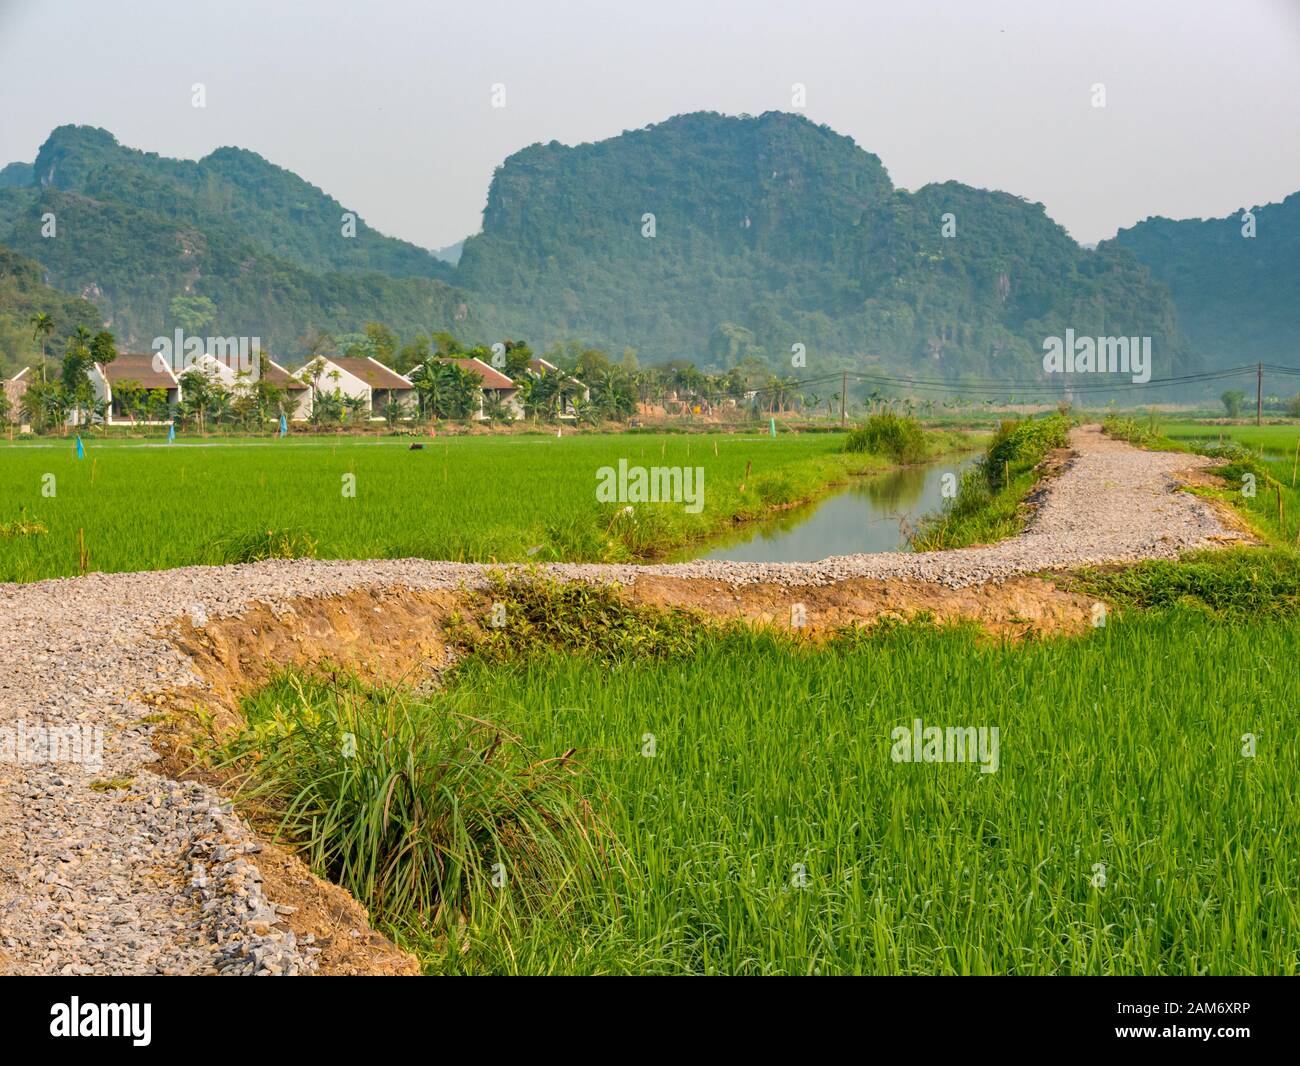 Pista ghiaiosa che conduce attraverso risaie con canale di irrigazione dell'acqua e vista delle montagne carsiche calcaree, Tam Coc, Ninh Binh, Vietnam, Asia Foto Stock